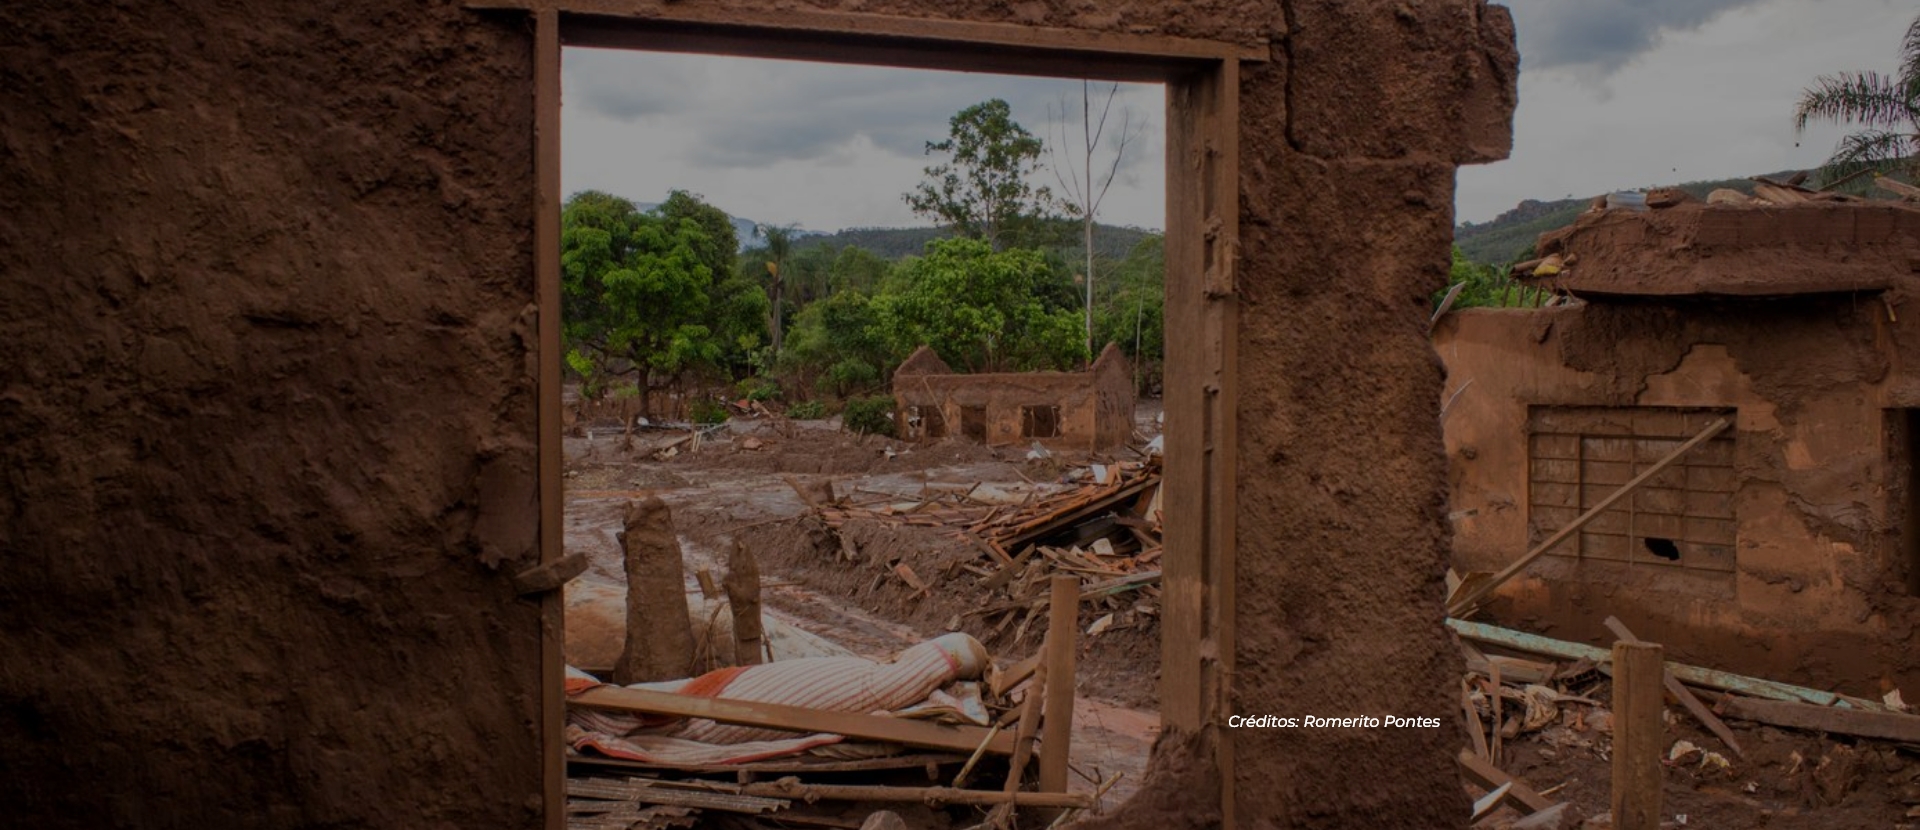 Imagem de casas destruídas pela lama. Créditos: Romerito Pontes.